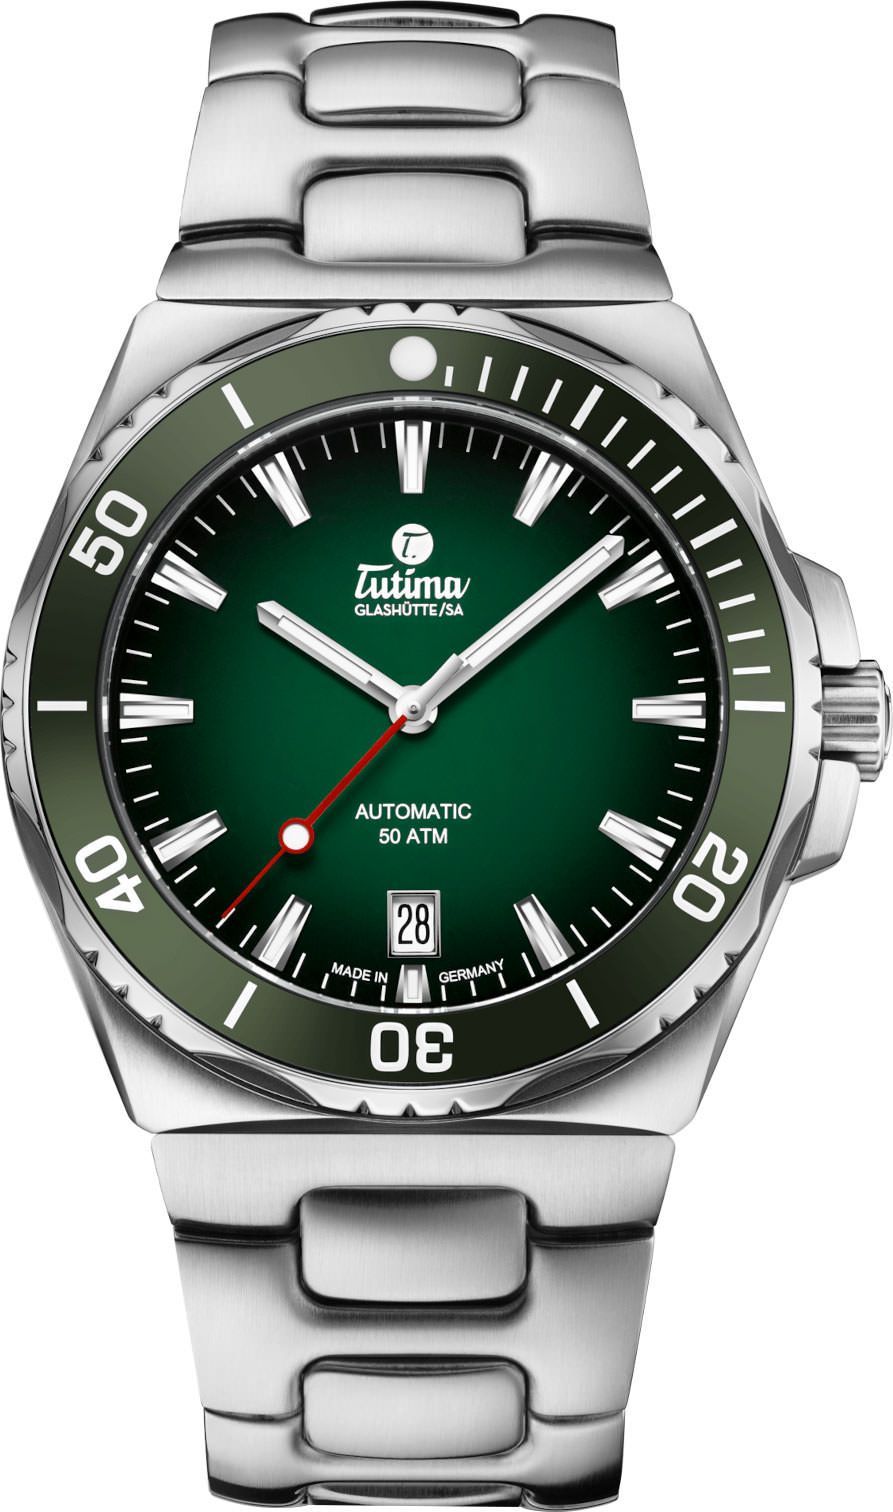 Tutima Glashütte Seven Seas S 40 mm Watch in Green Dial For Men - 1